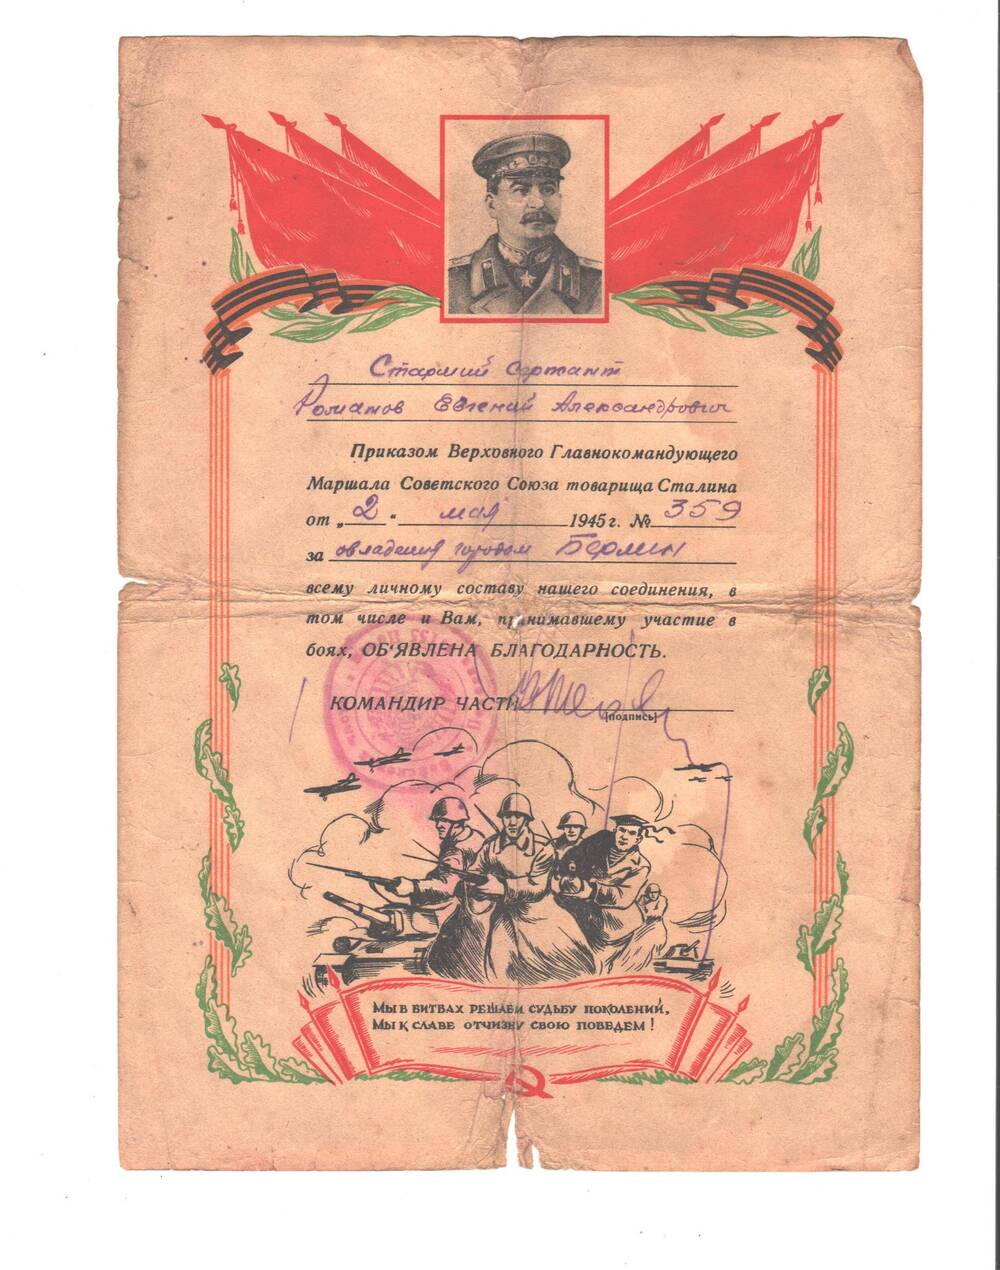 Благодарность старшему сержанту Романову Евгению Александровичу за овладение г. Берлин от 2 мая 1945 г. № 359.